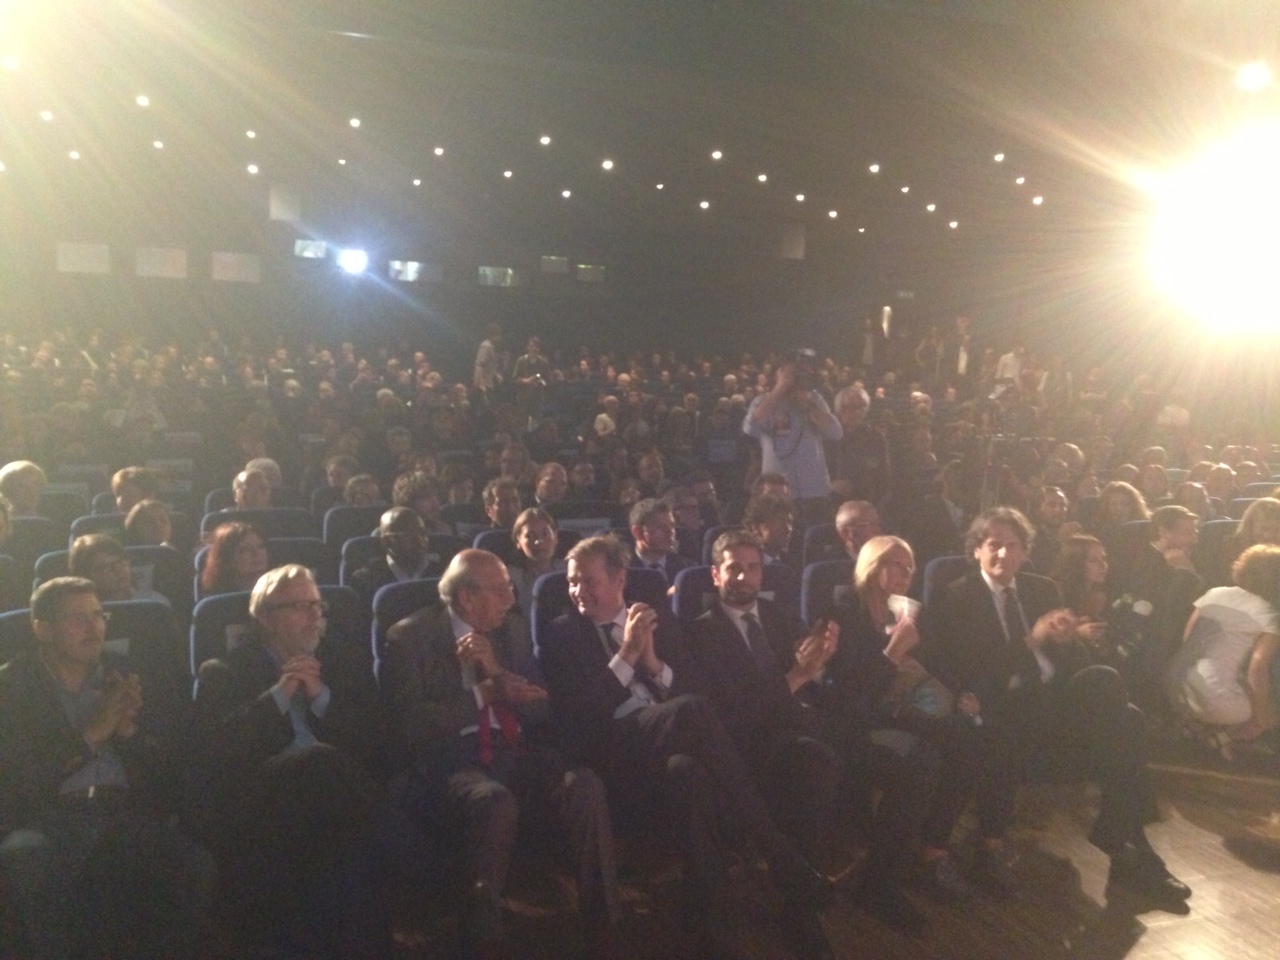 CinemAmbiente 2014 closing ceremony